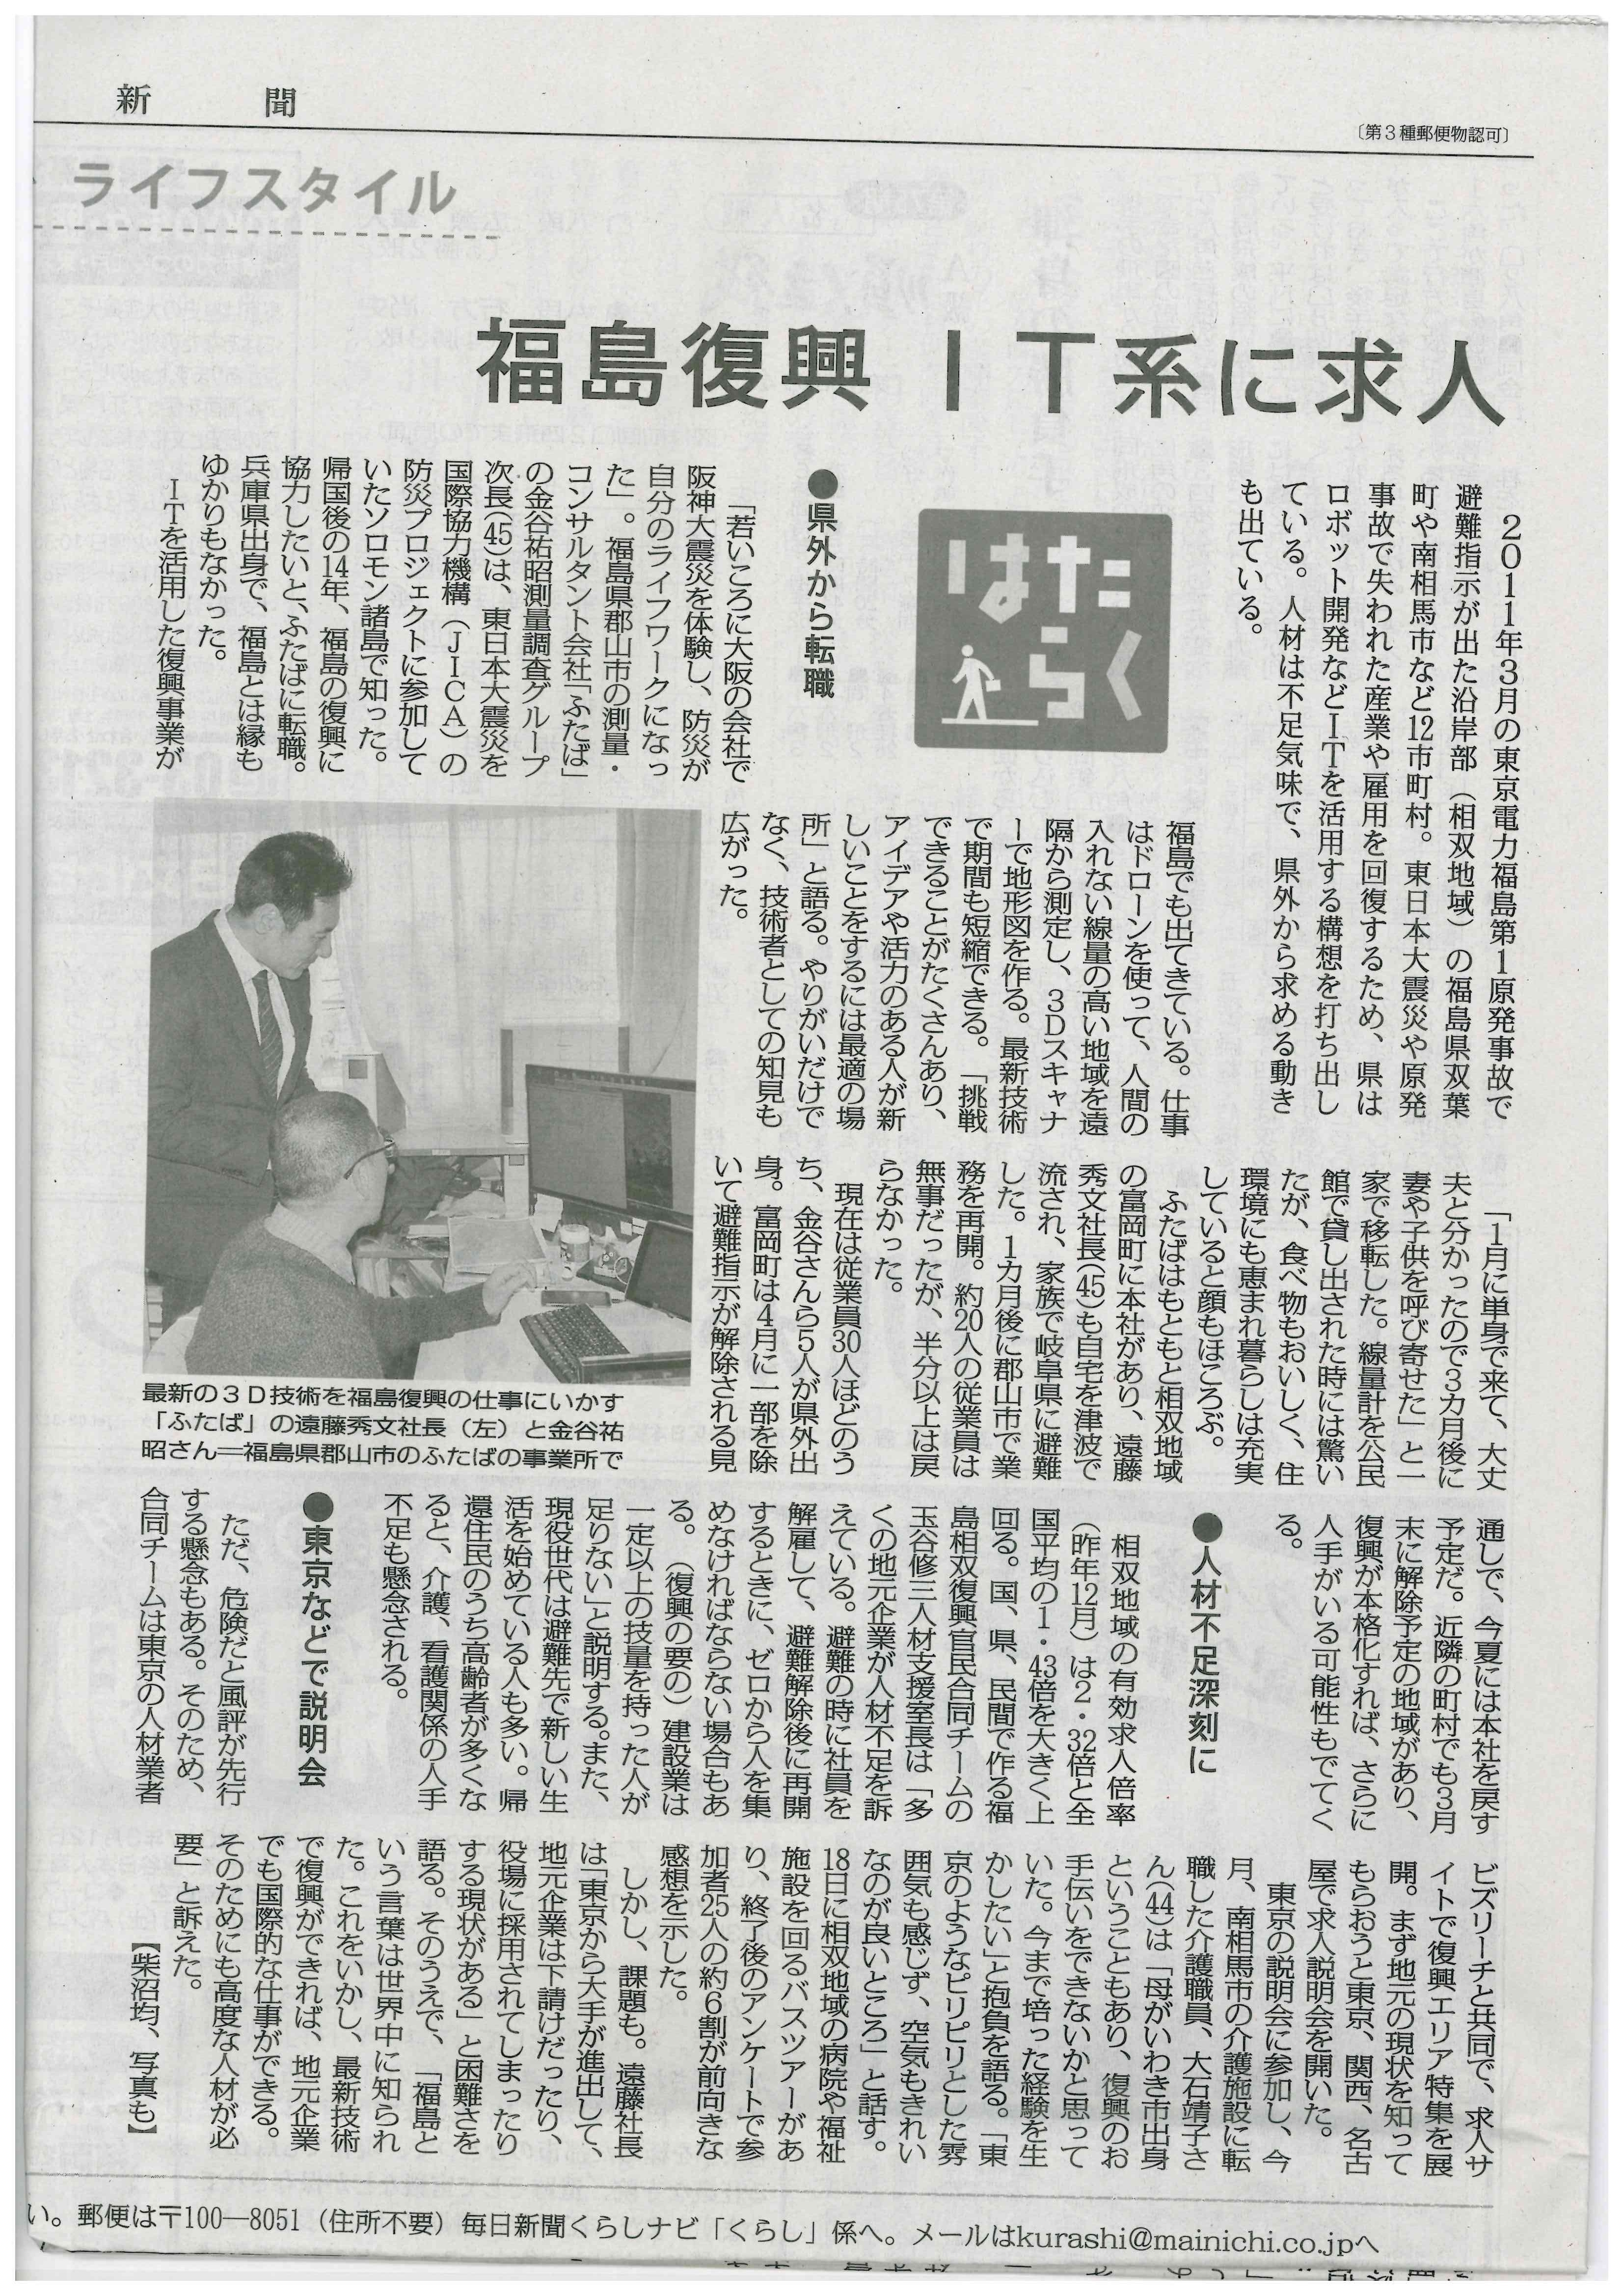 福島復興IT系に求人＿毎日新聞朝刊＿2月27日の画像